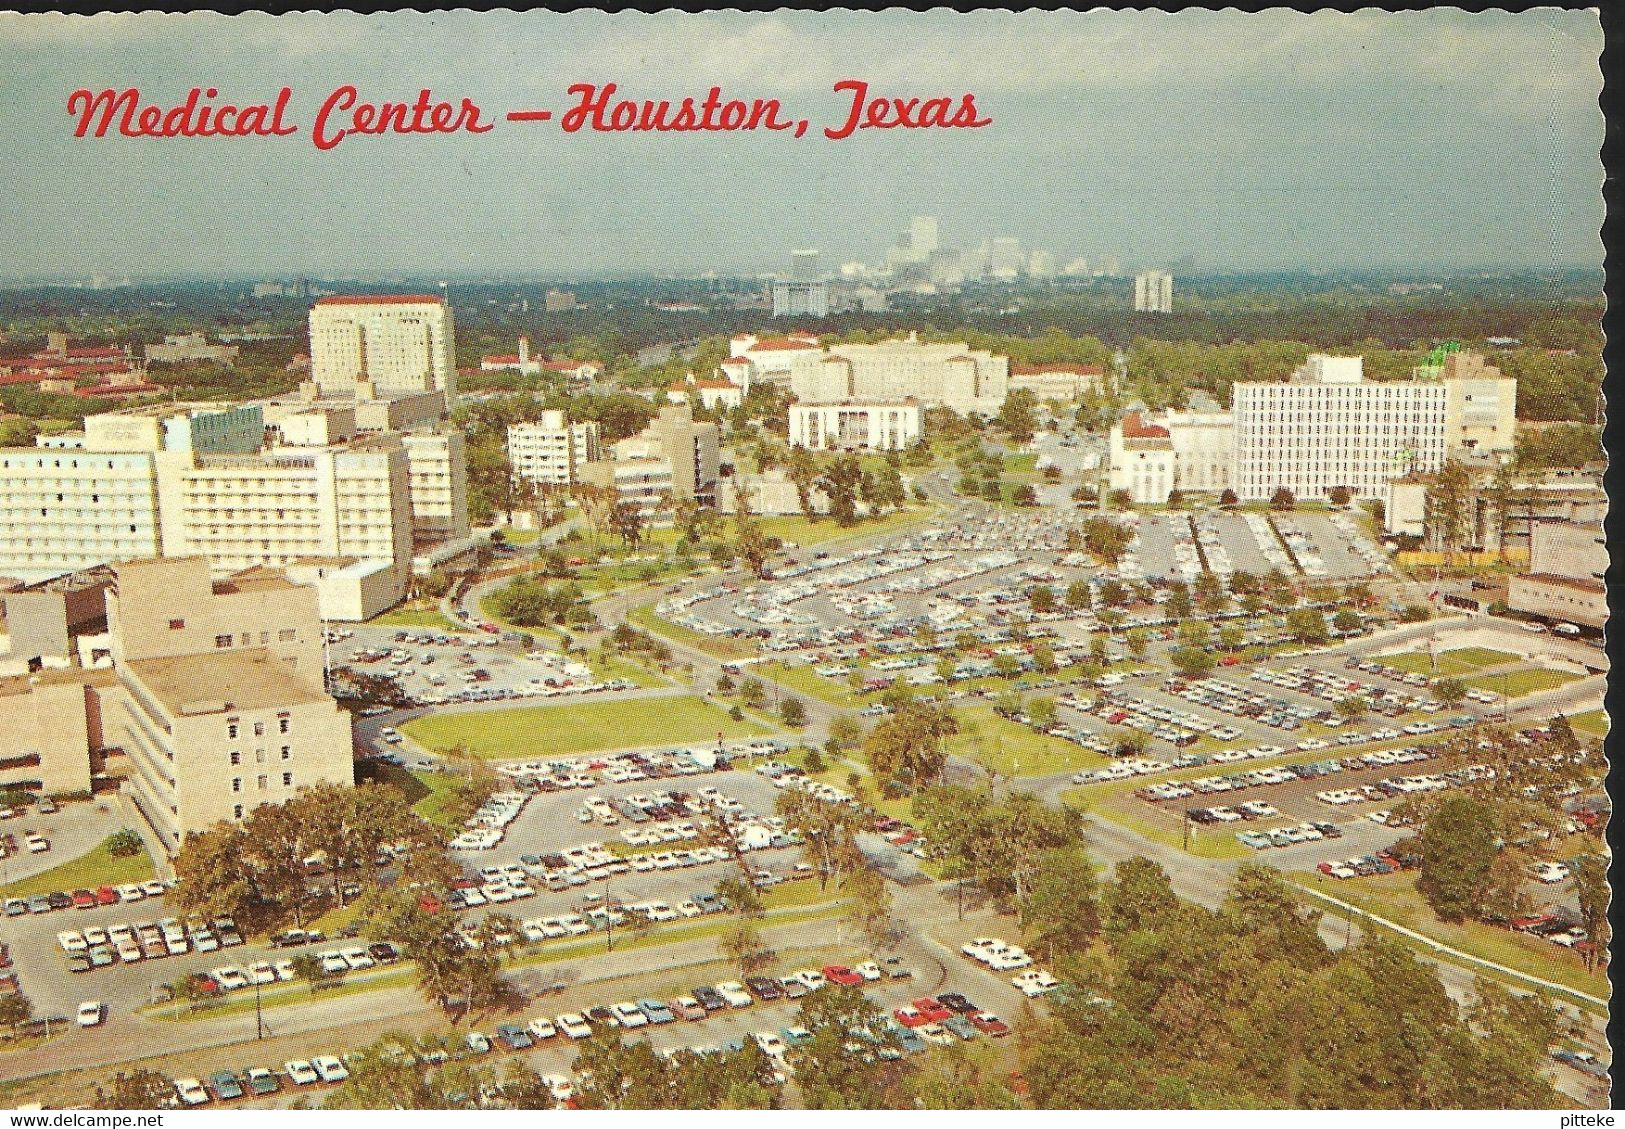 Medical Center - Houston